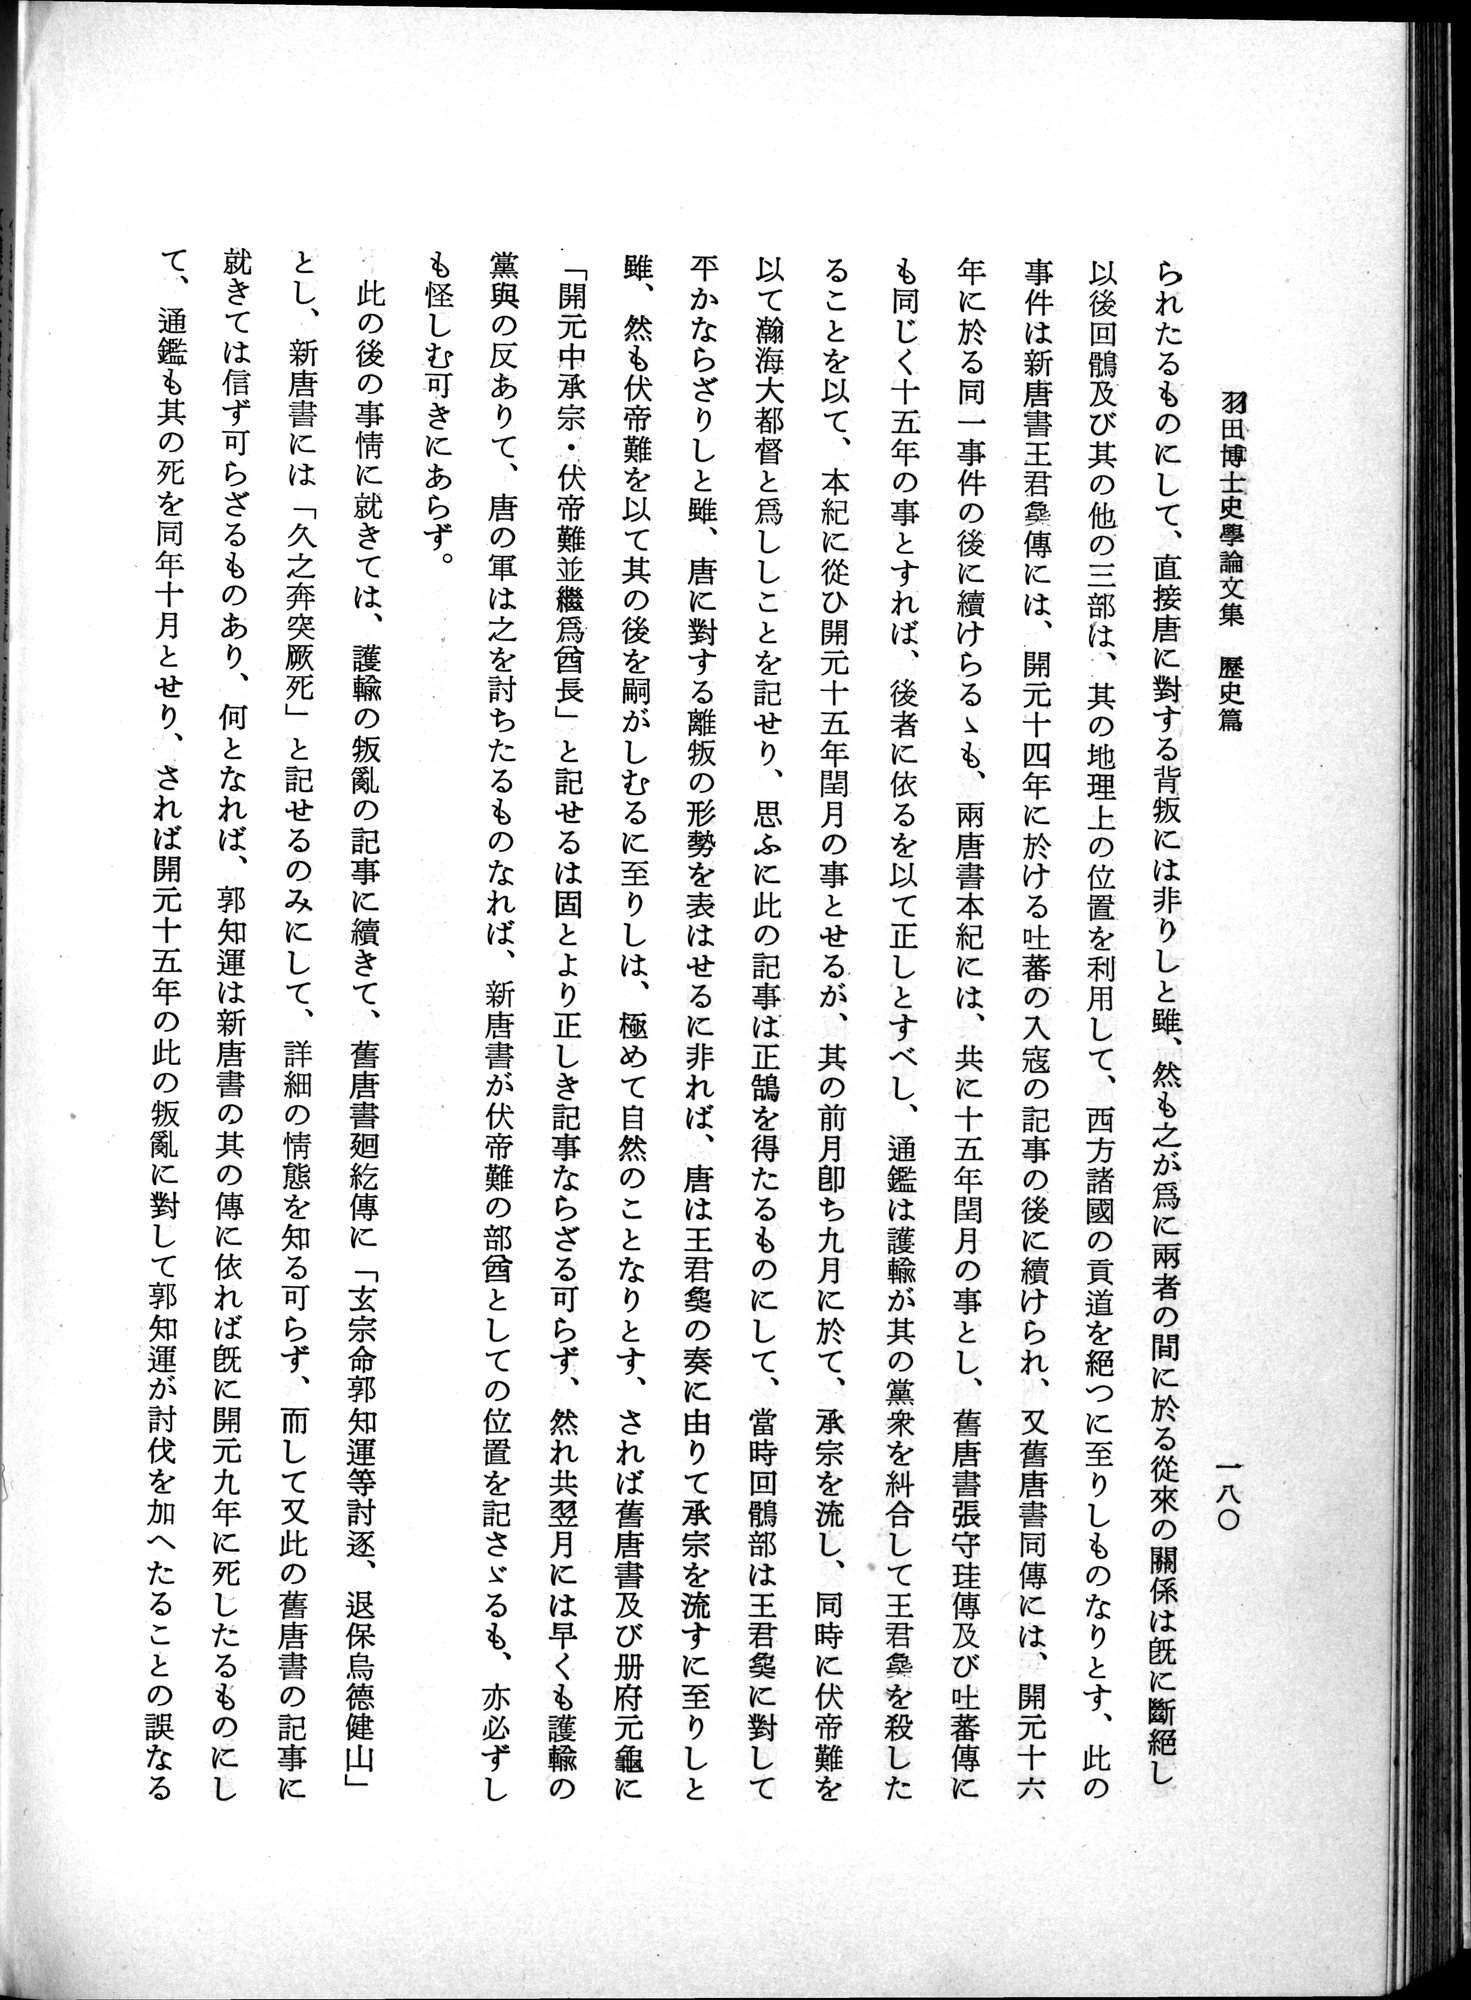 羽田博士史学論文集 : vol.1 / Page 218 (Grayscale High Resolution Image)